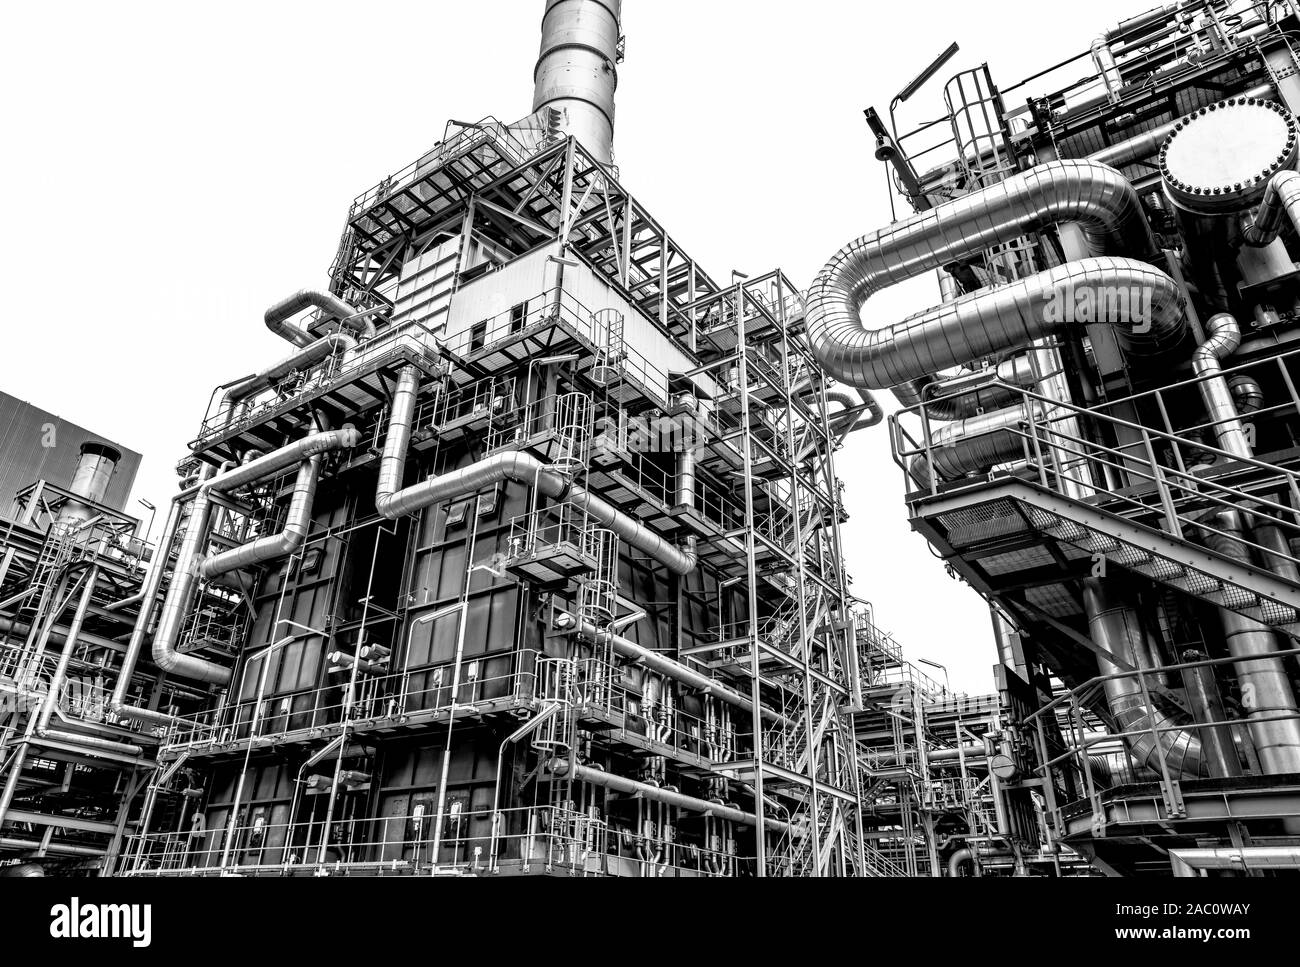 L'industrie du pétrole et du gaz de raffinerie,usine,usine pétrochimique domaine à fond blanc. Banque D'Images